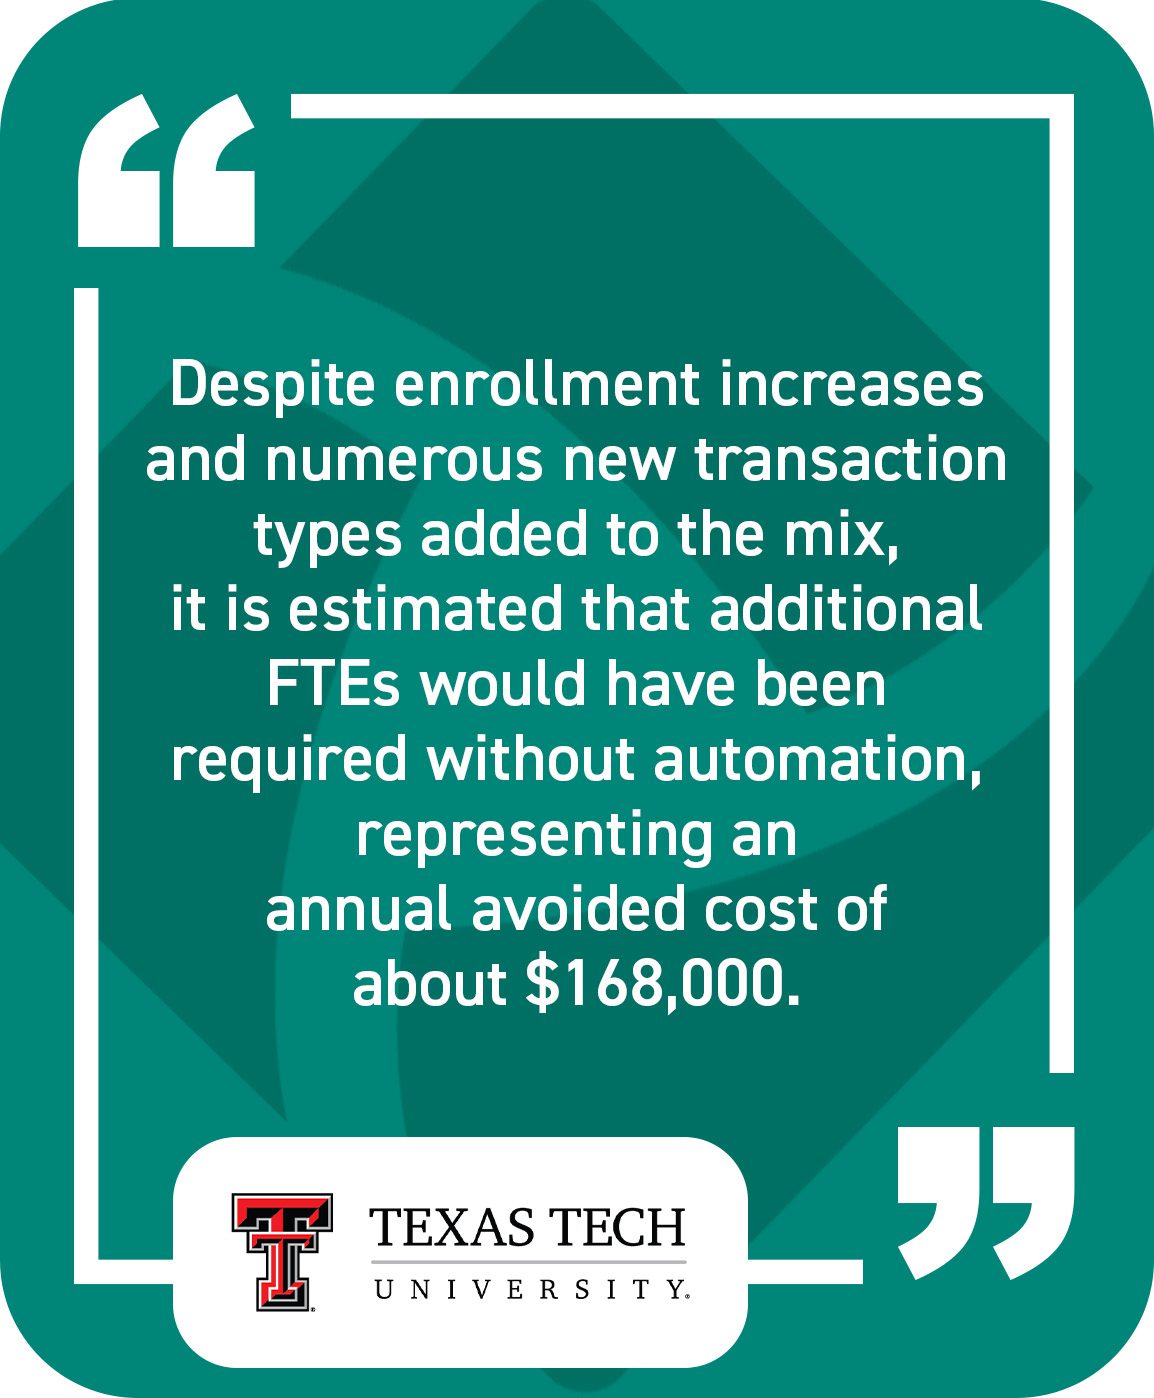 Texas Tech University Quote